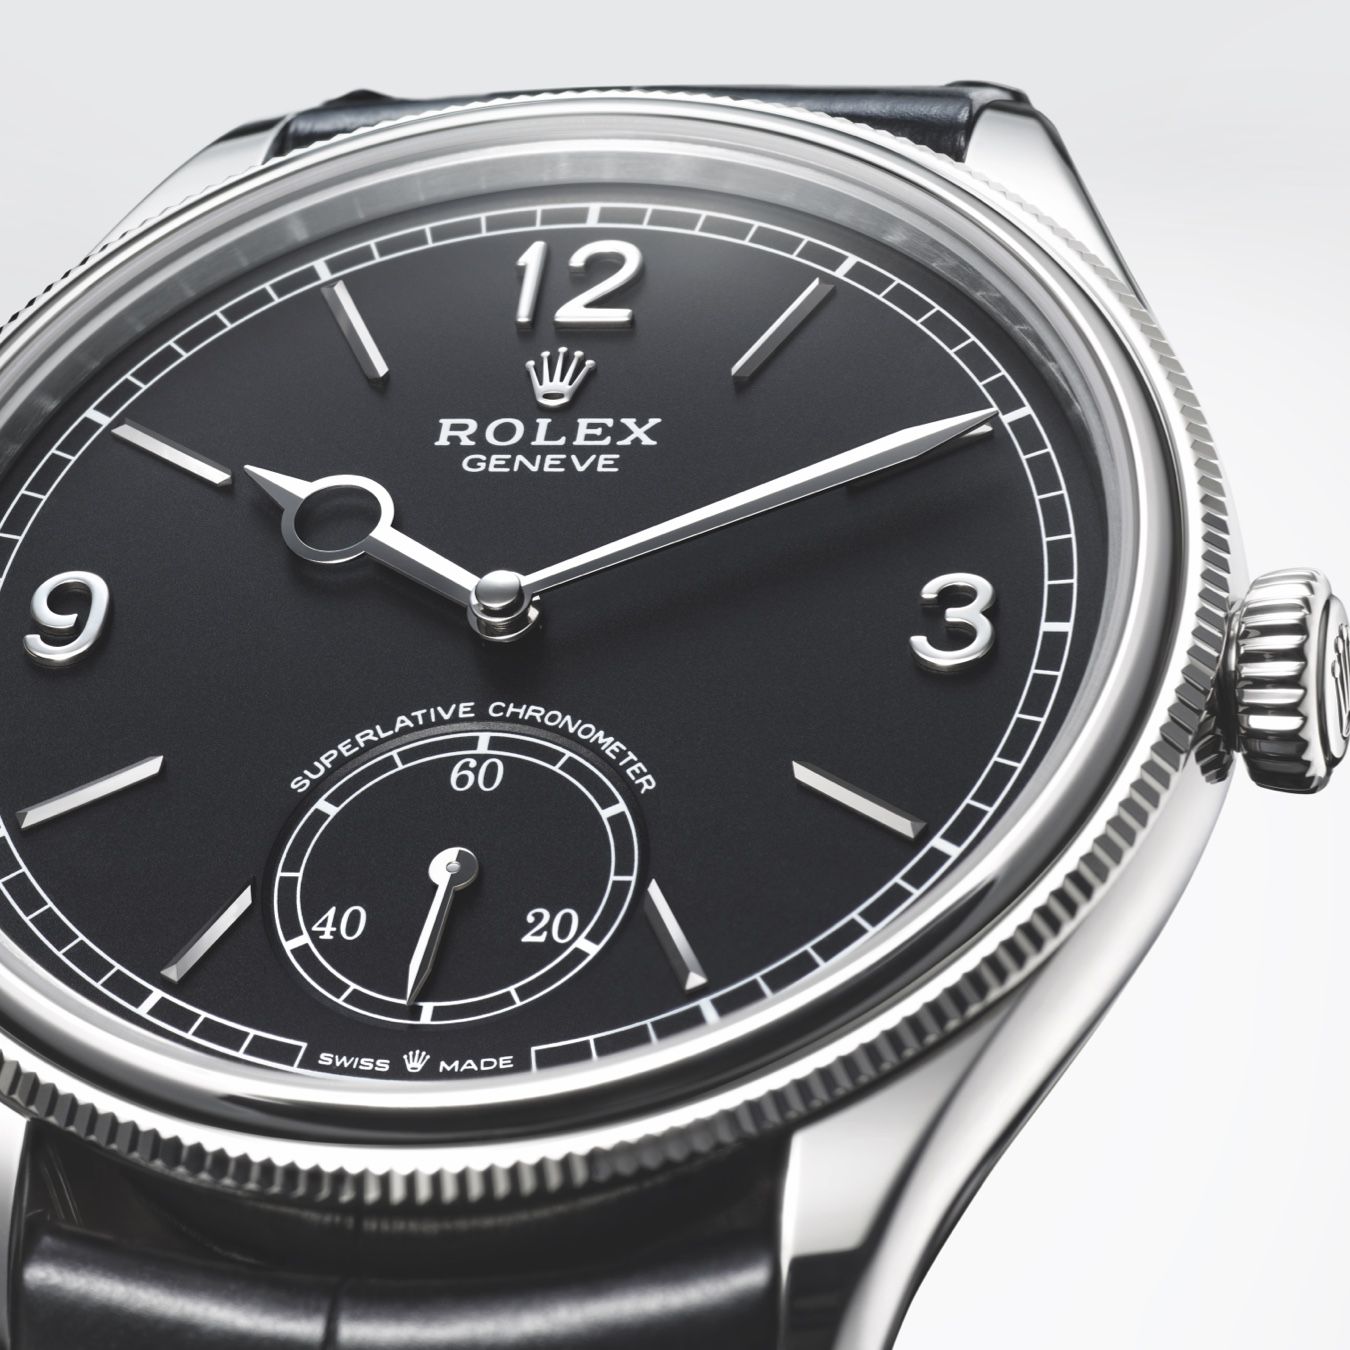 Rolex 1908 mit Ziffern 3, 9 und 12 sowie der kleinen Sekunde auf der 6 Uhr-Position 